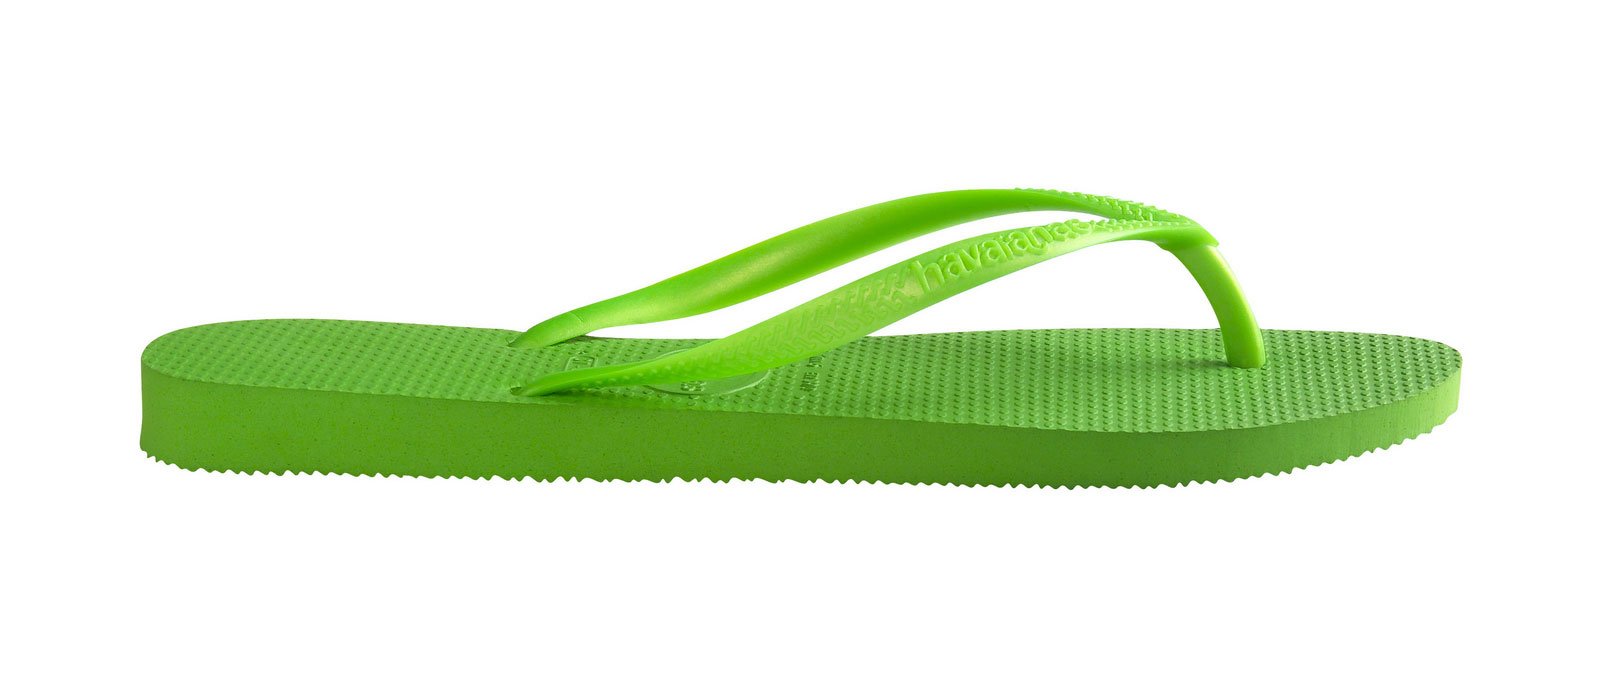 Flip-Flops Flip-flops - Slim Neon Green - Brand Havaianas